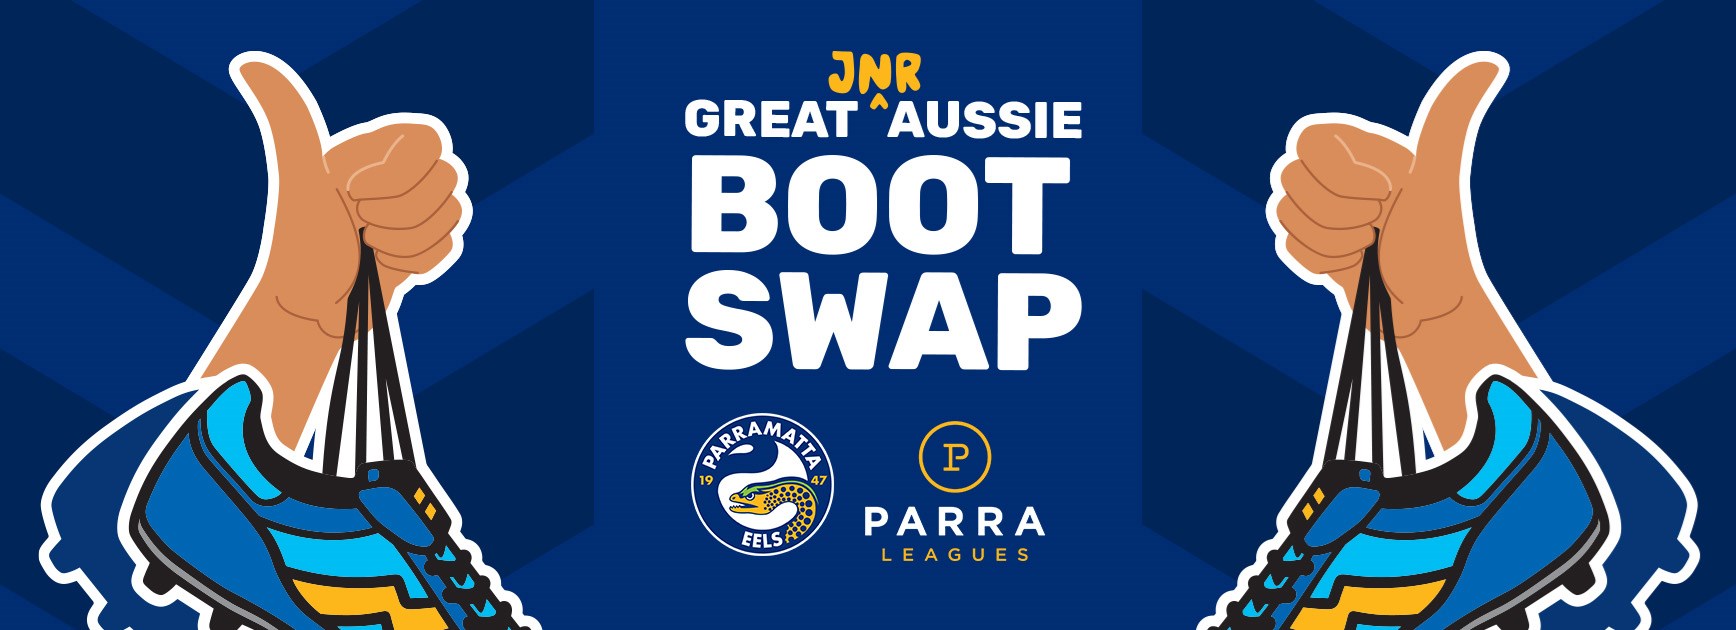 Eels launch the Great Aussie Boot Swap